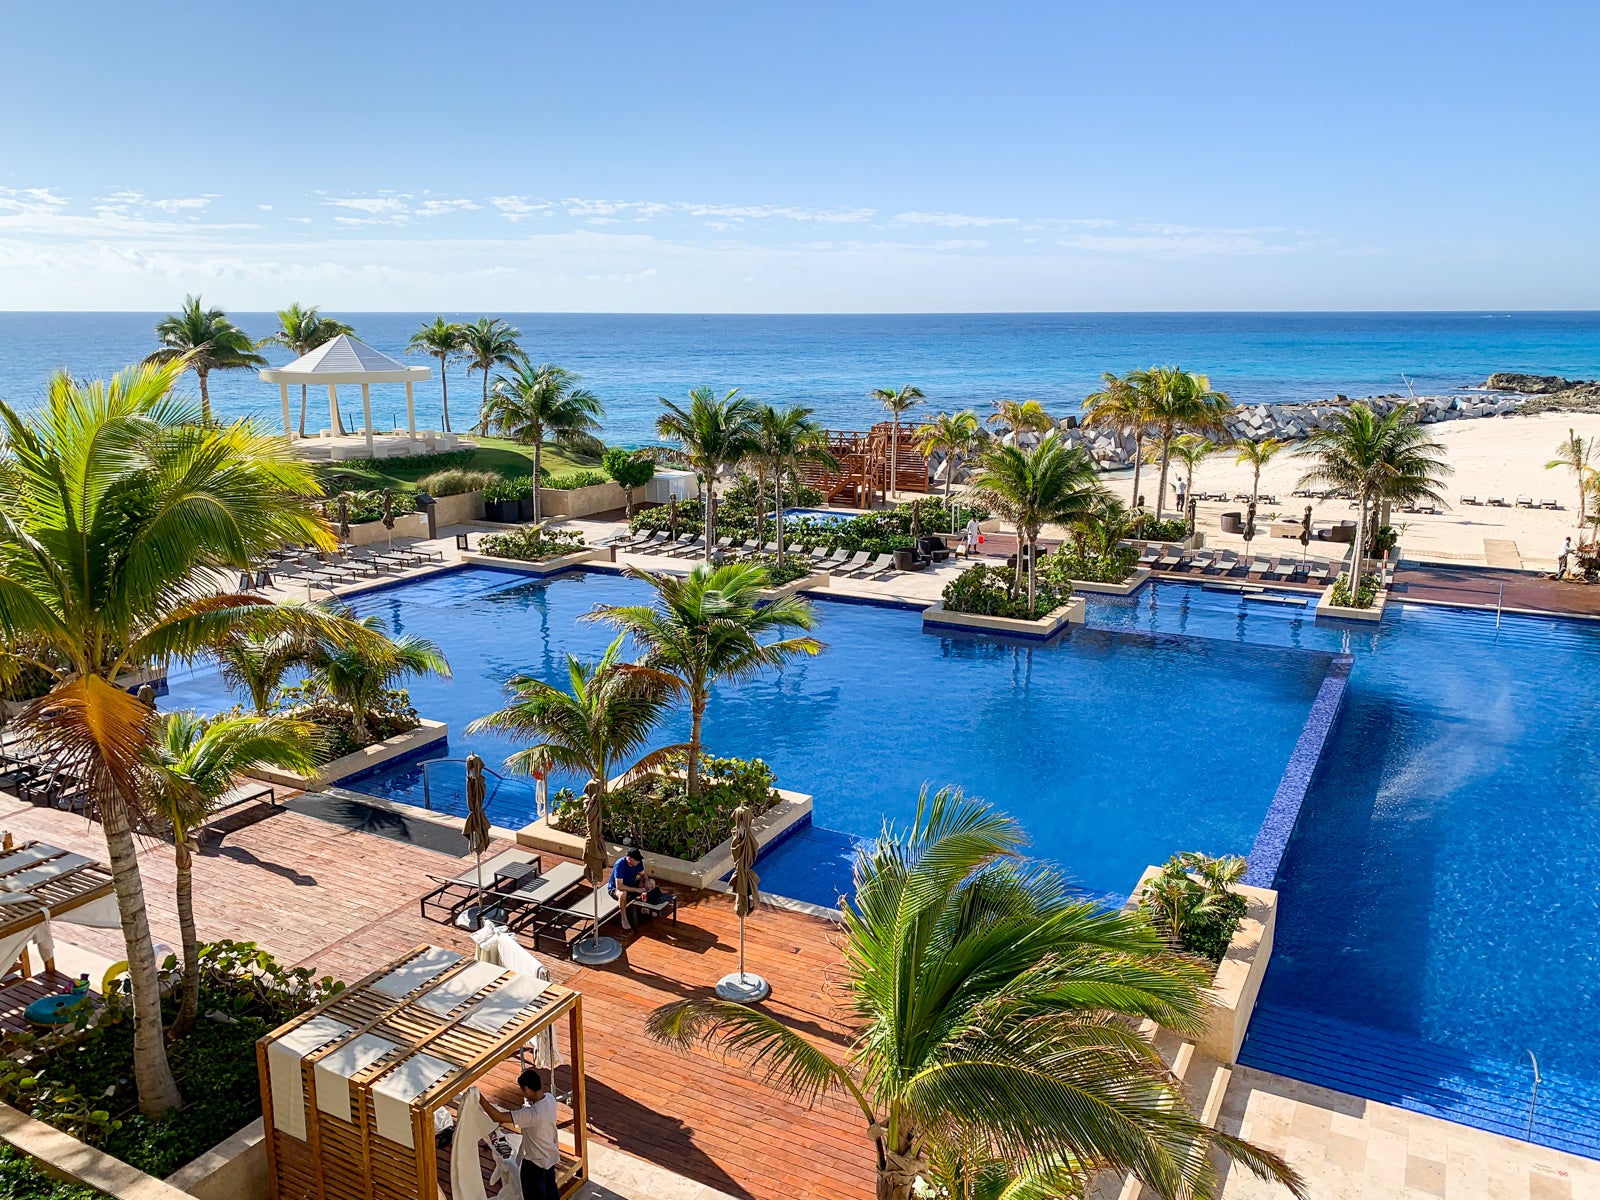 Cancun flight deals: Enjoy warmth this winter for under $250 round-trip